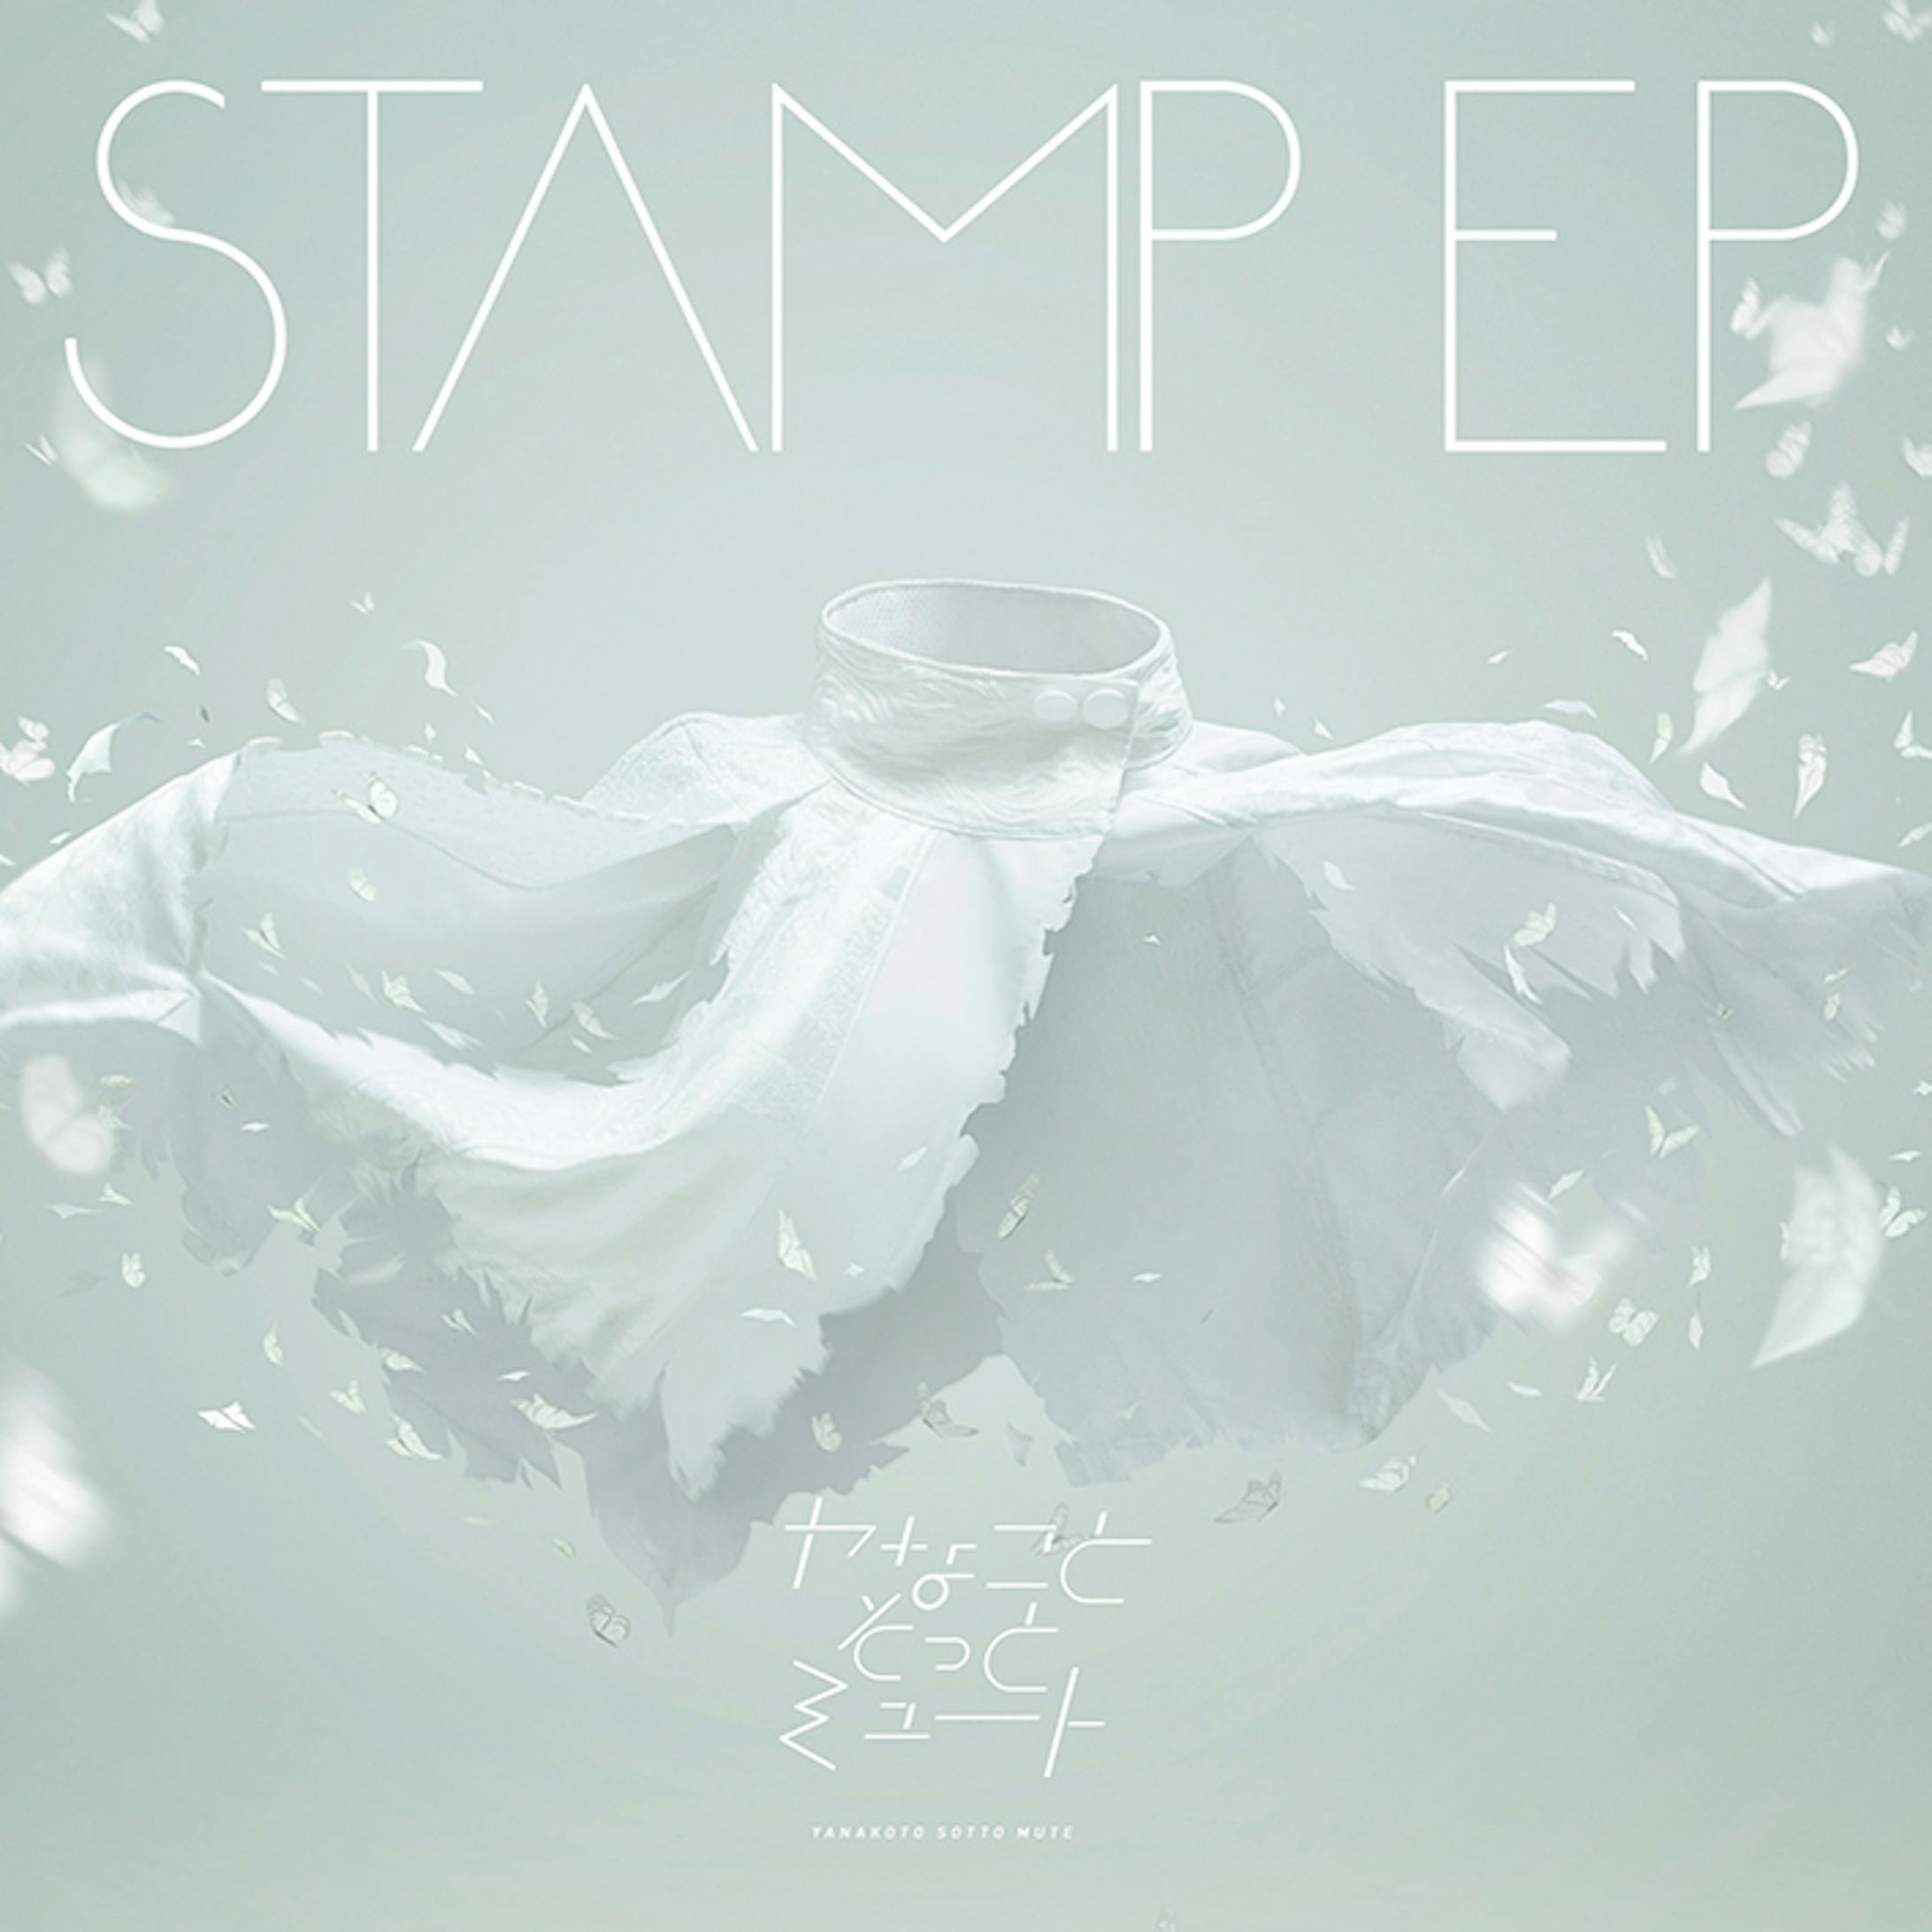 ヤなことそっとミュート "STAMP EP" COVER ART-2